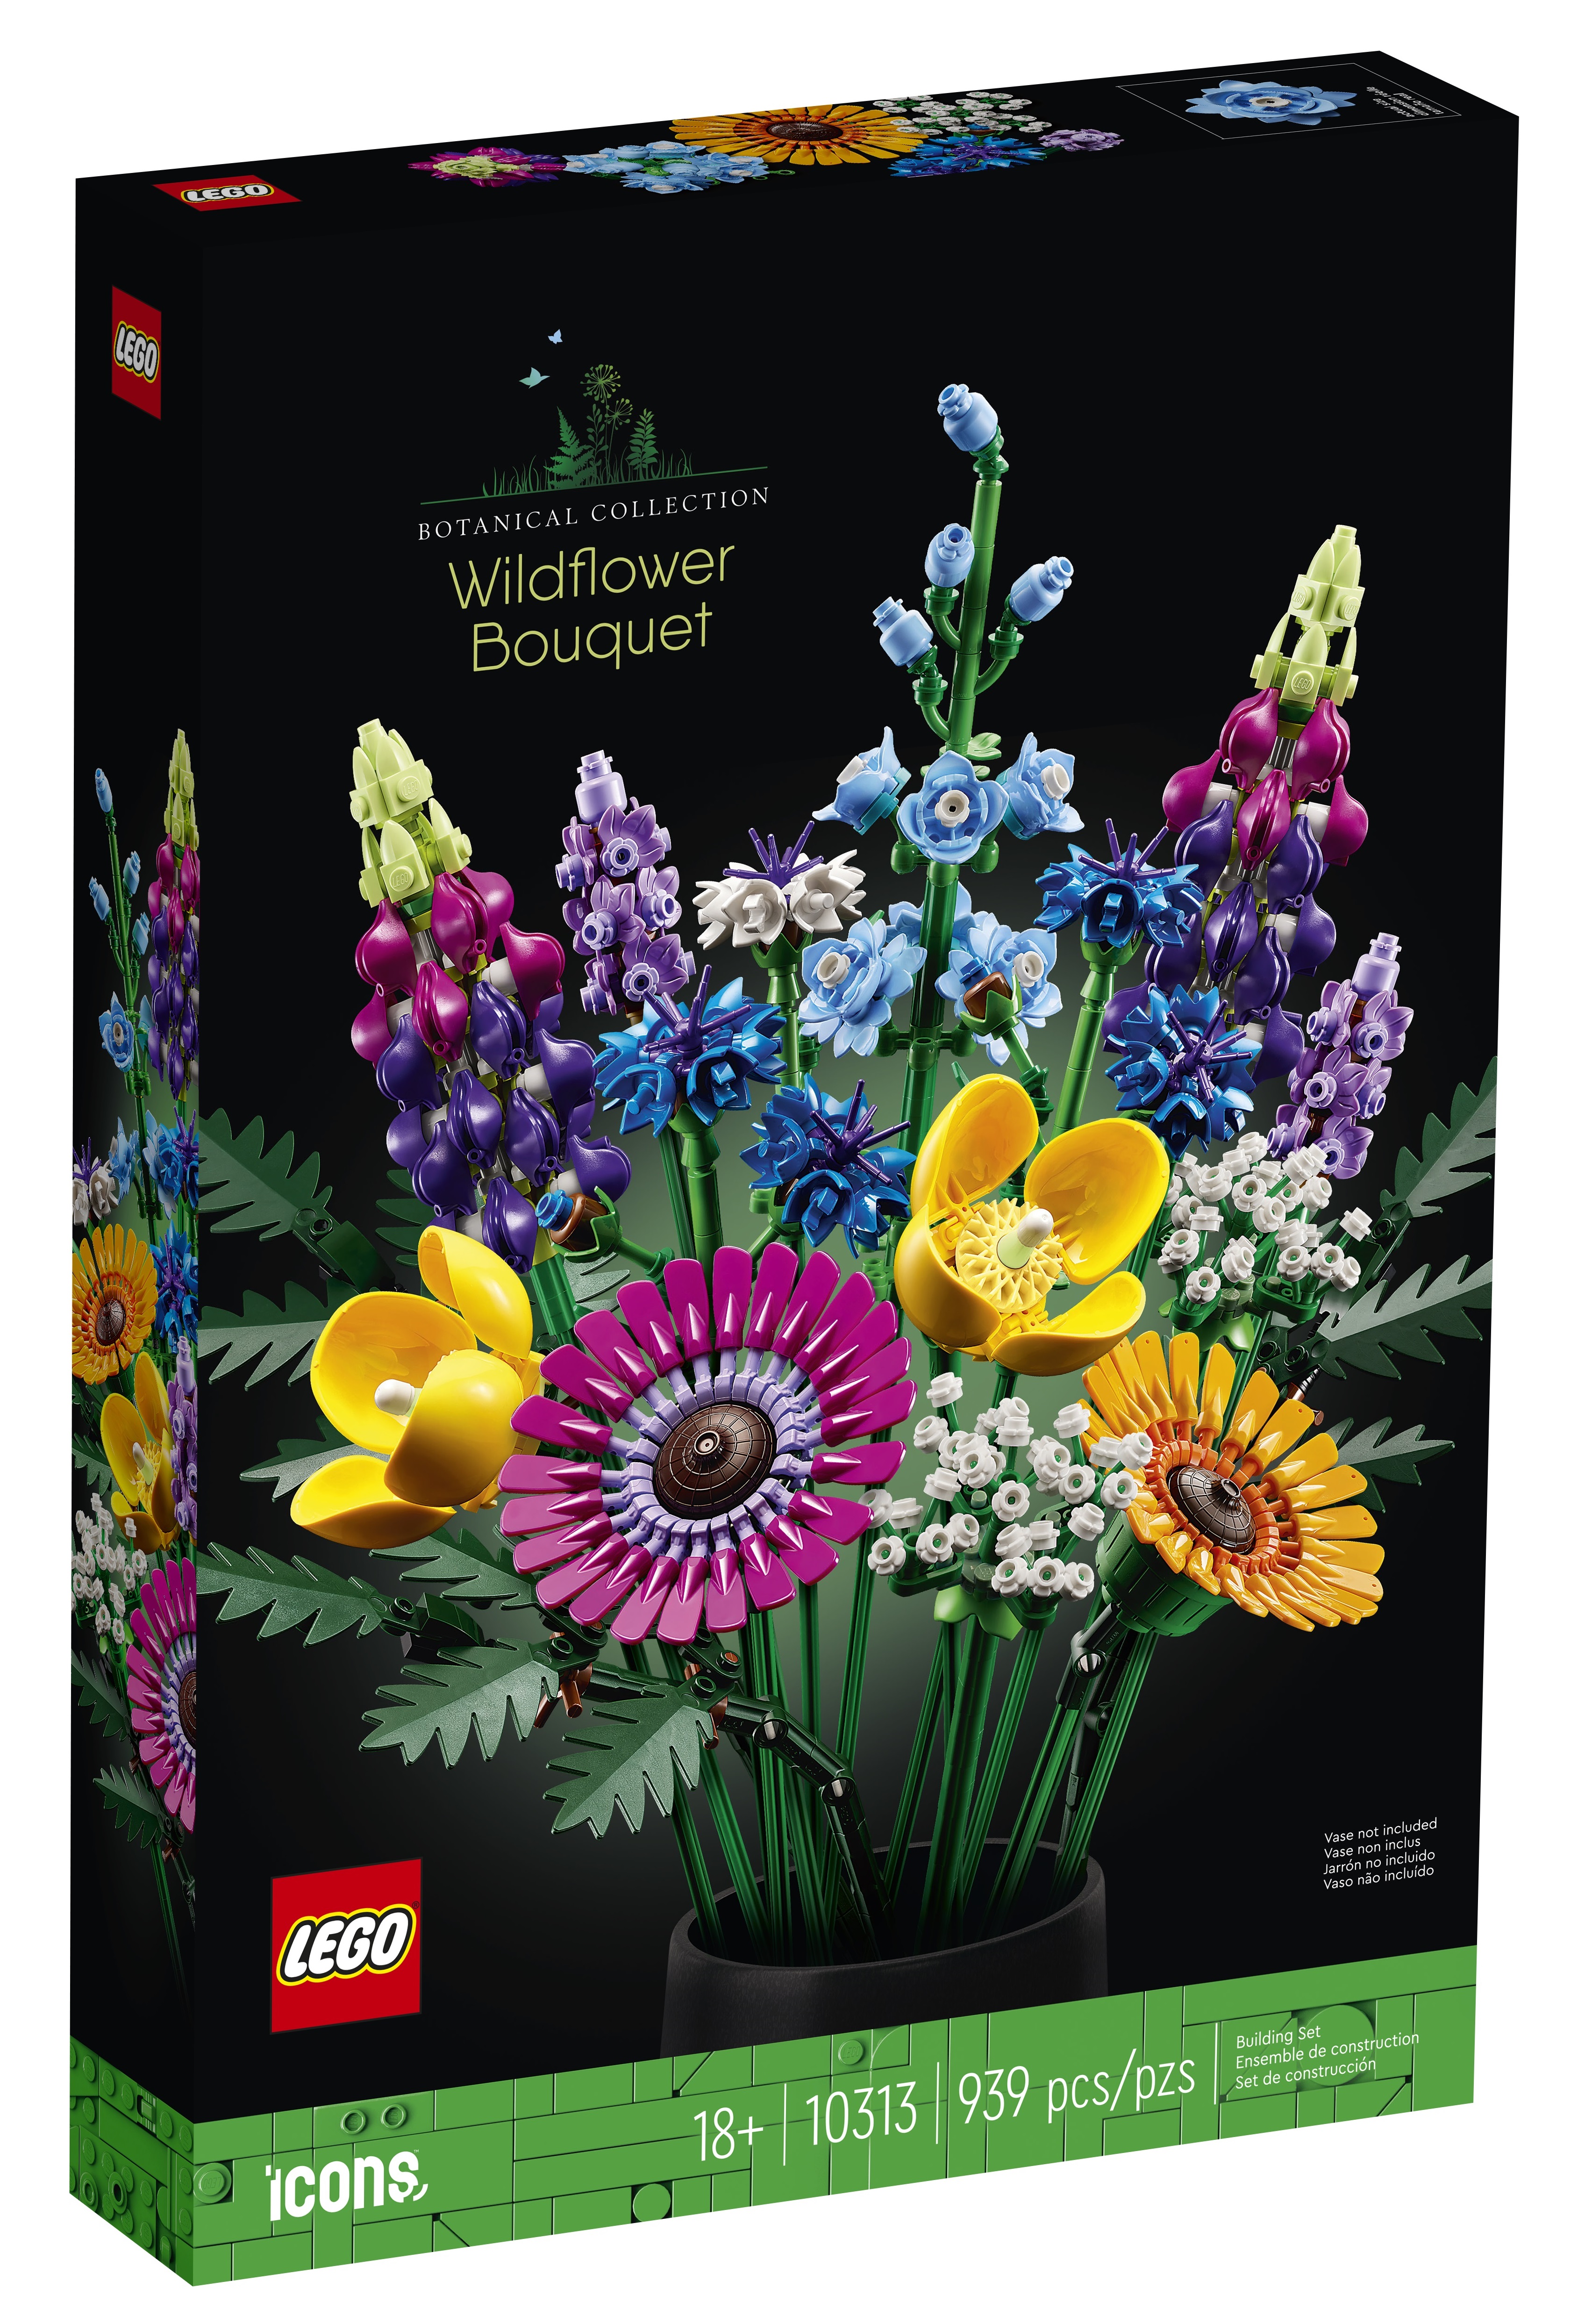 LEGO Icons Botanical Collection February 2023 Sets Revealed - The